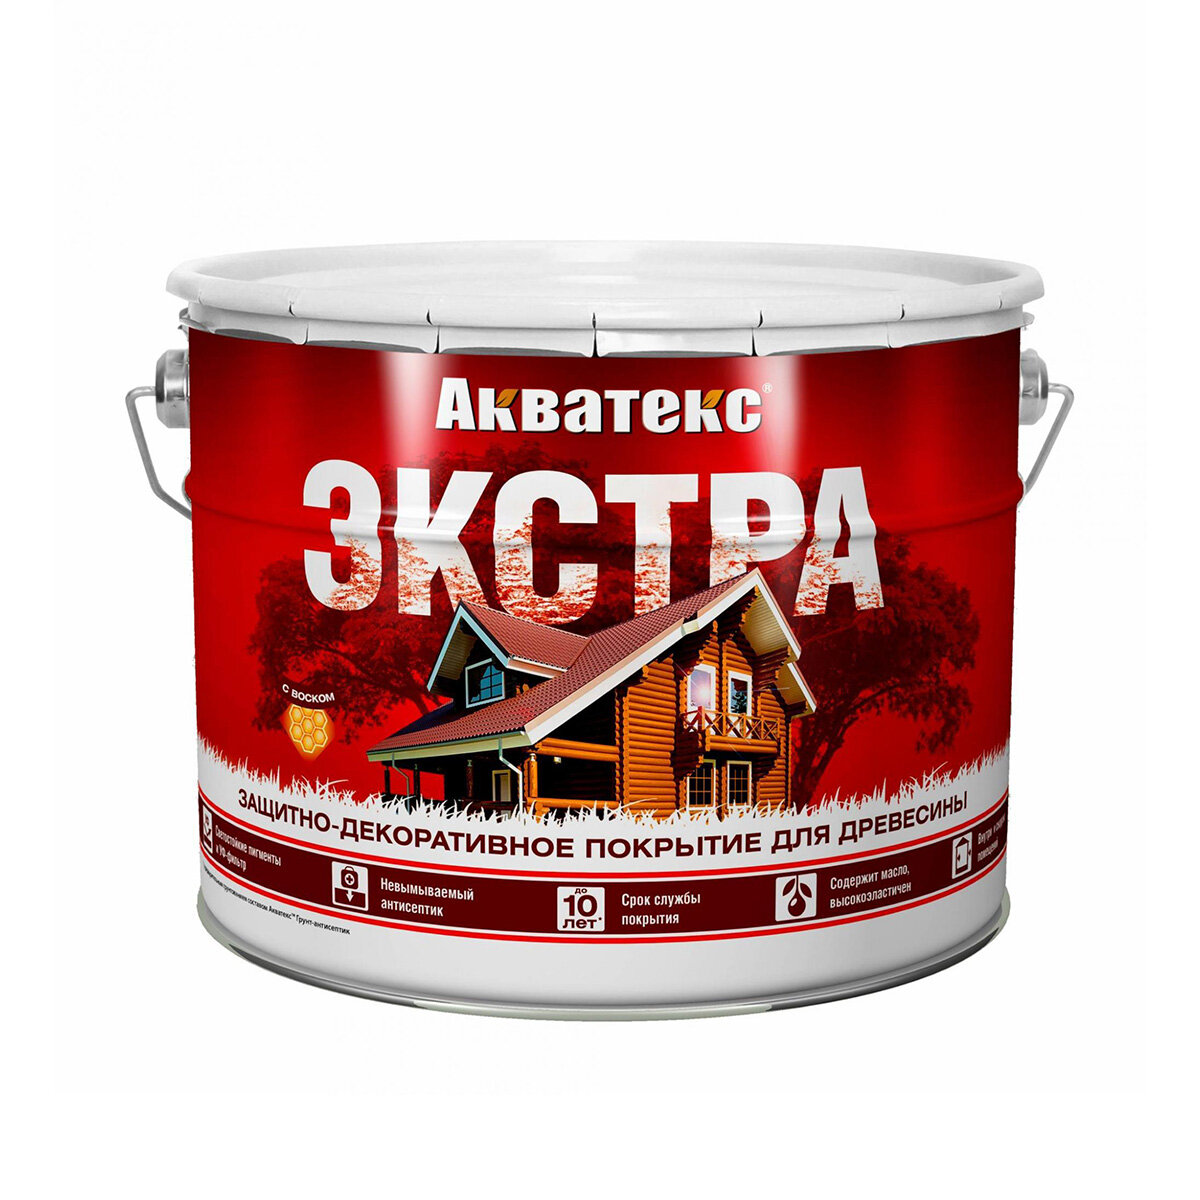 Акватекс Акватекс-Экстра защитно-декоративное покрытие для древесины алкидное полуглянцевое сосна 27л